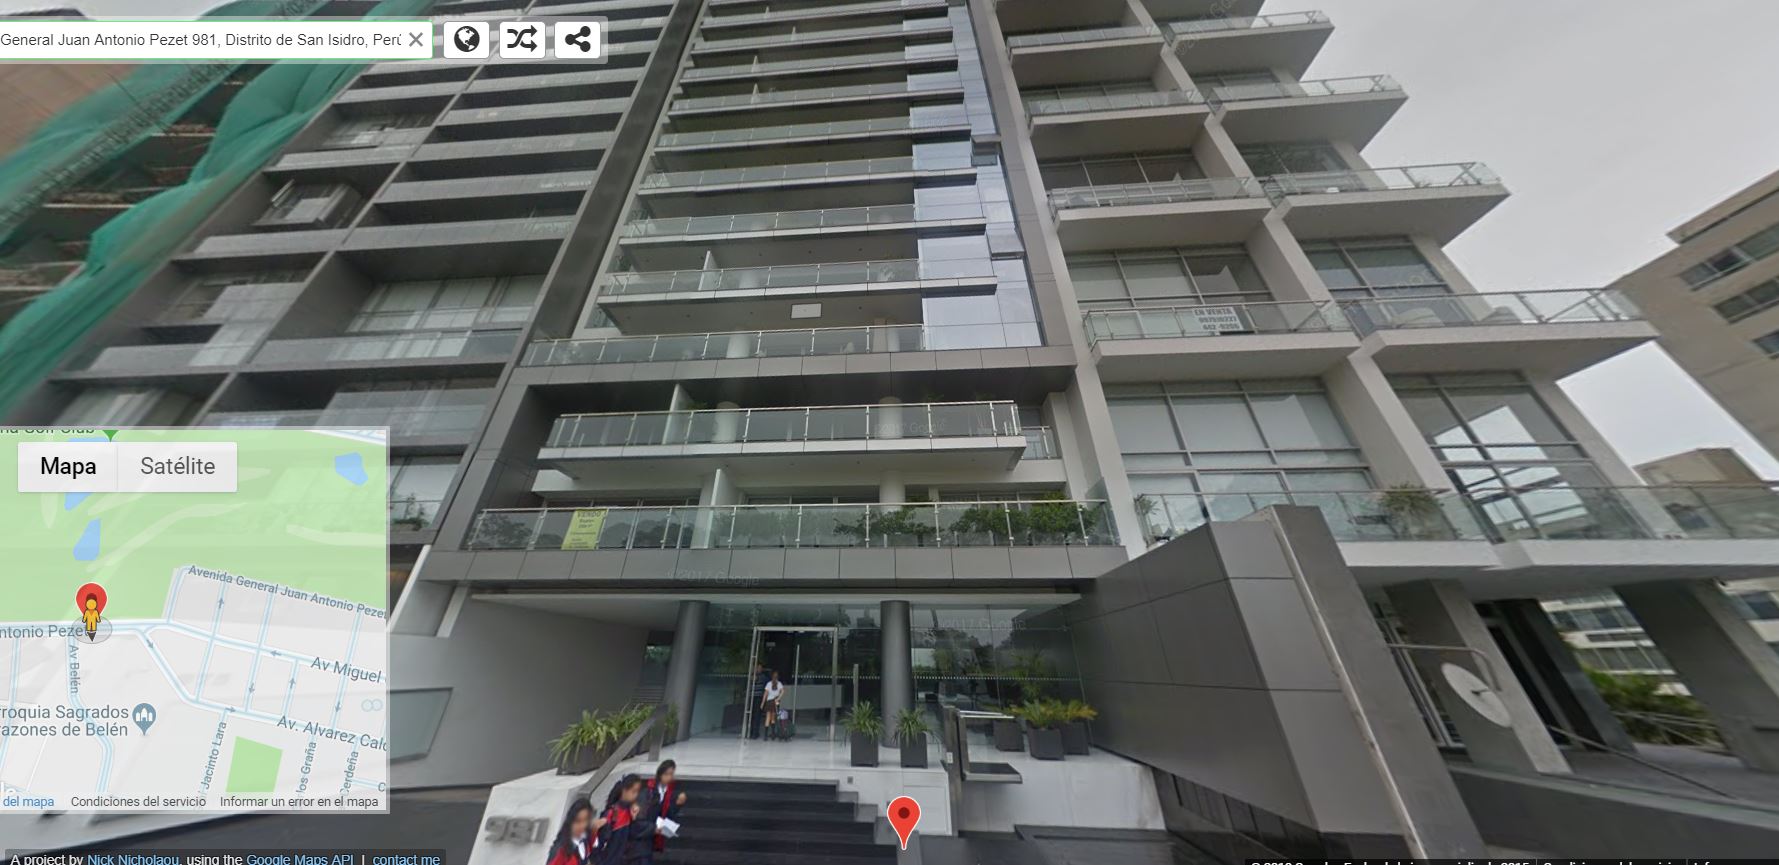 Así se ve el imponente edificio en Google Street View